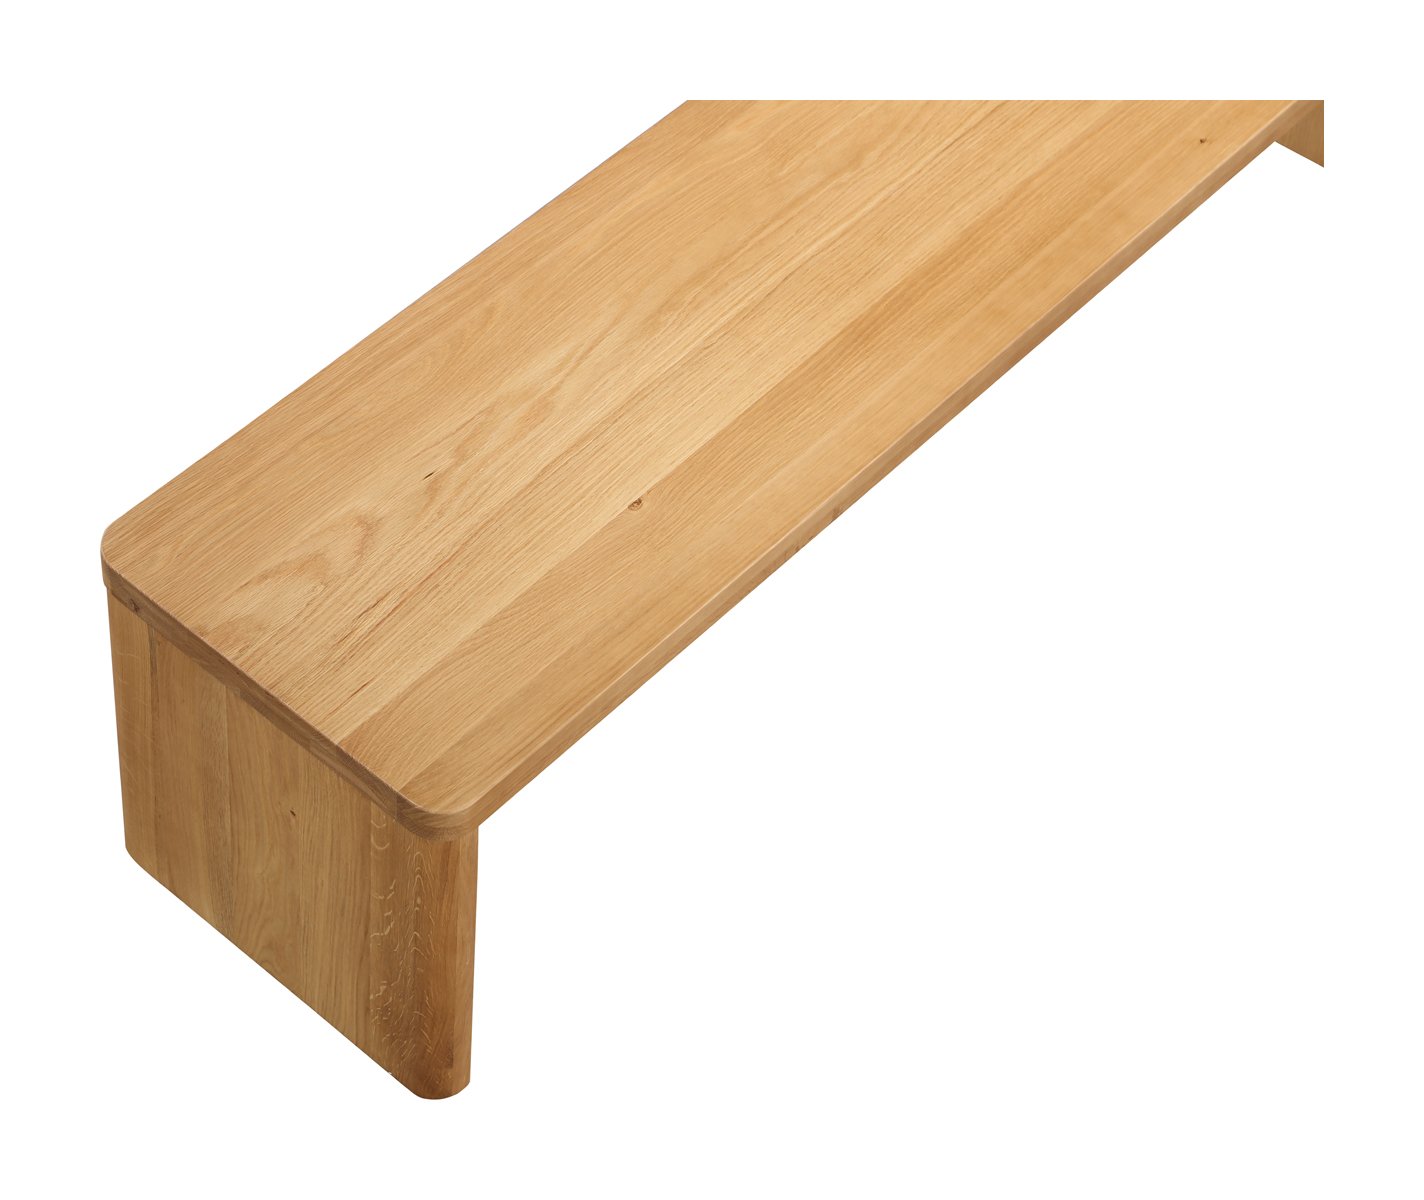 Form Bench, Seats 2, White Oak - Image 8